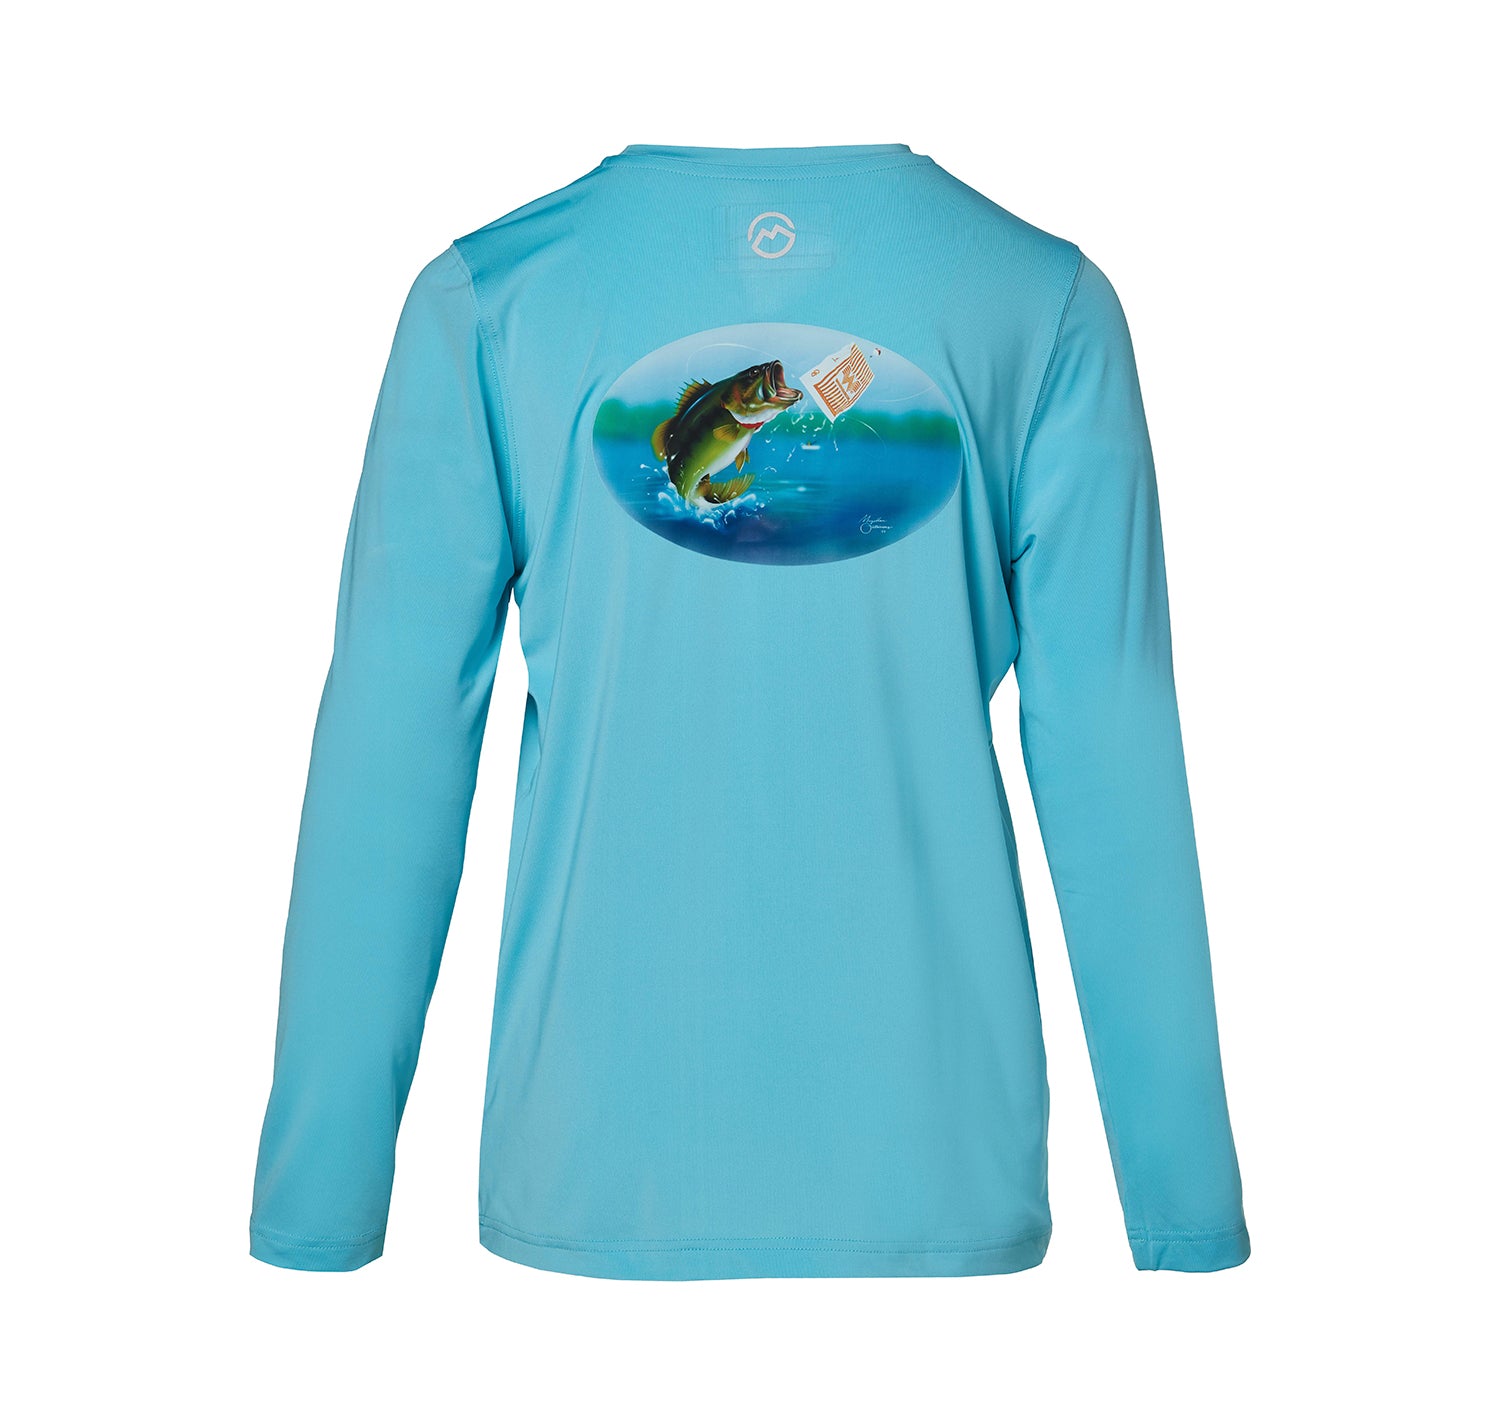 Magellan Long-Sleeve Fishing Shirt